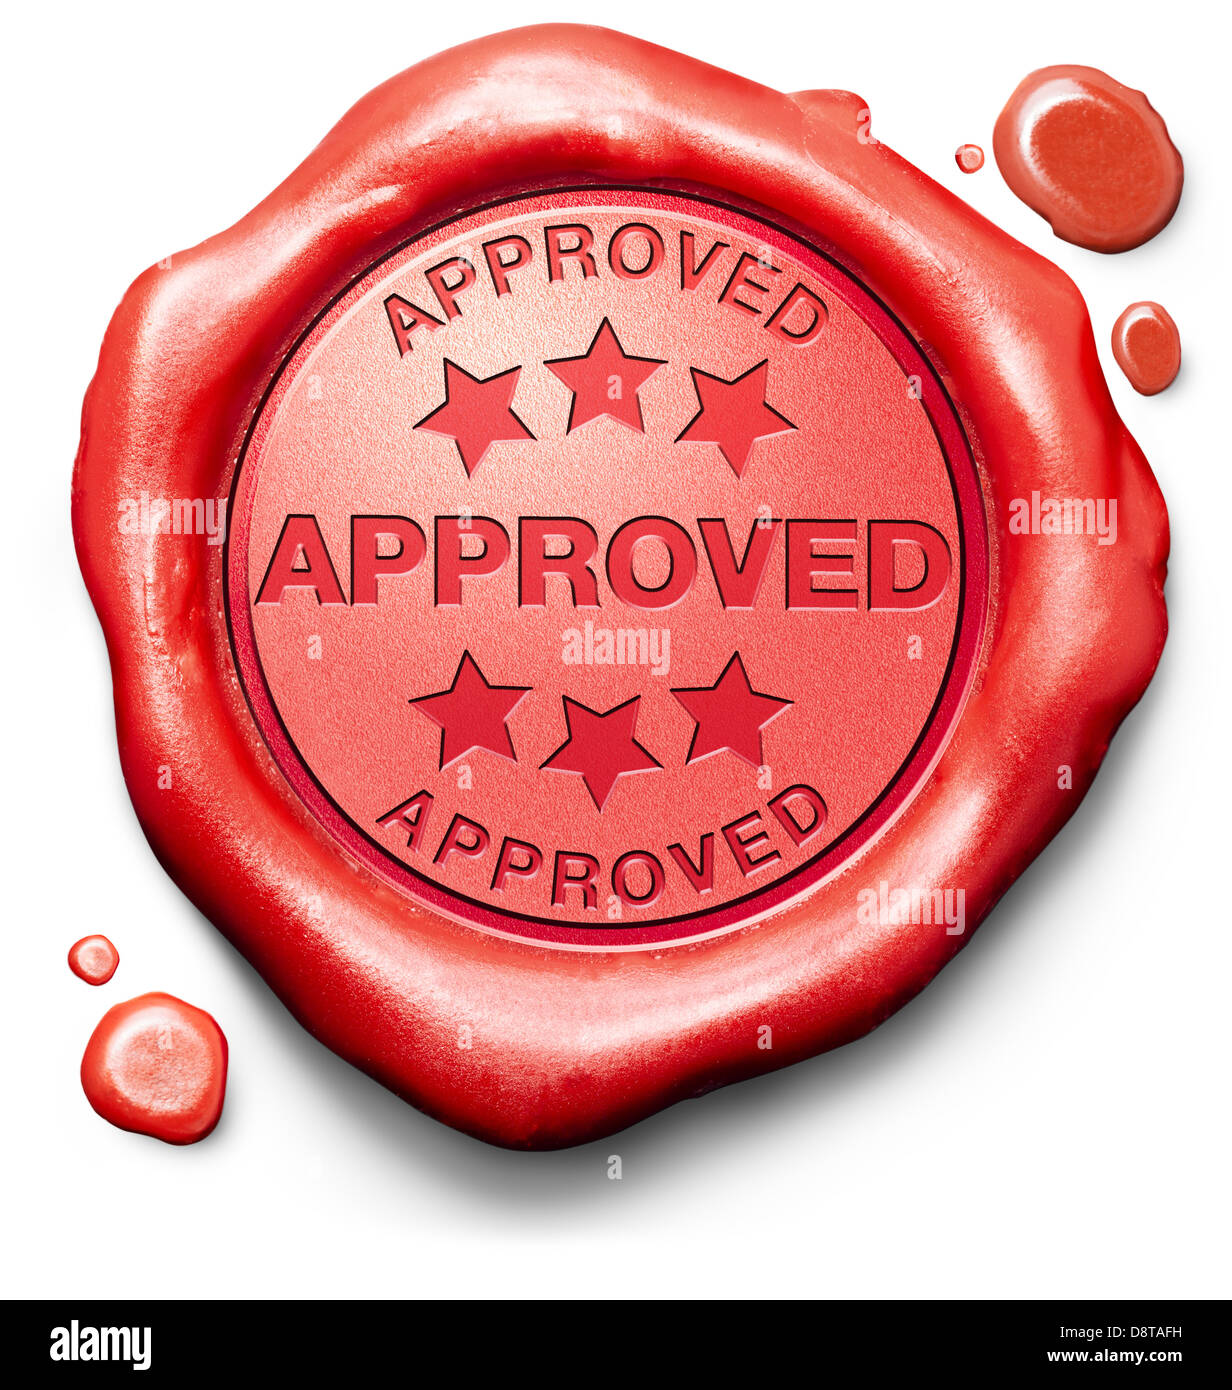 Aprobado pasar test y acceso concedido aprobación y aceptado acreditado sello rojo etiqueta o icono Foto de stock